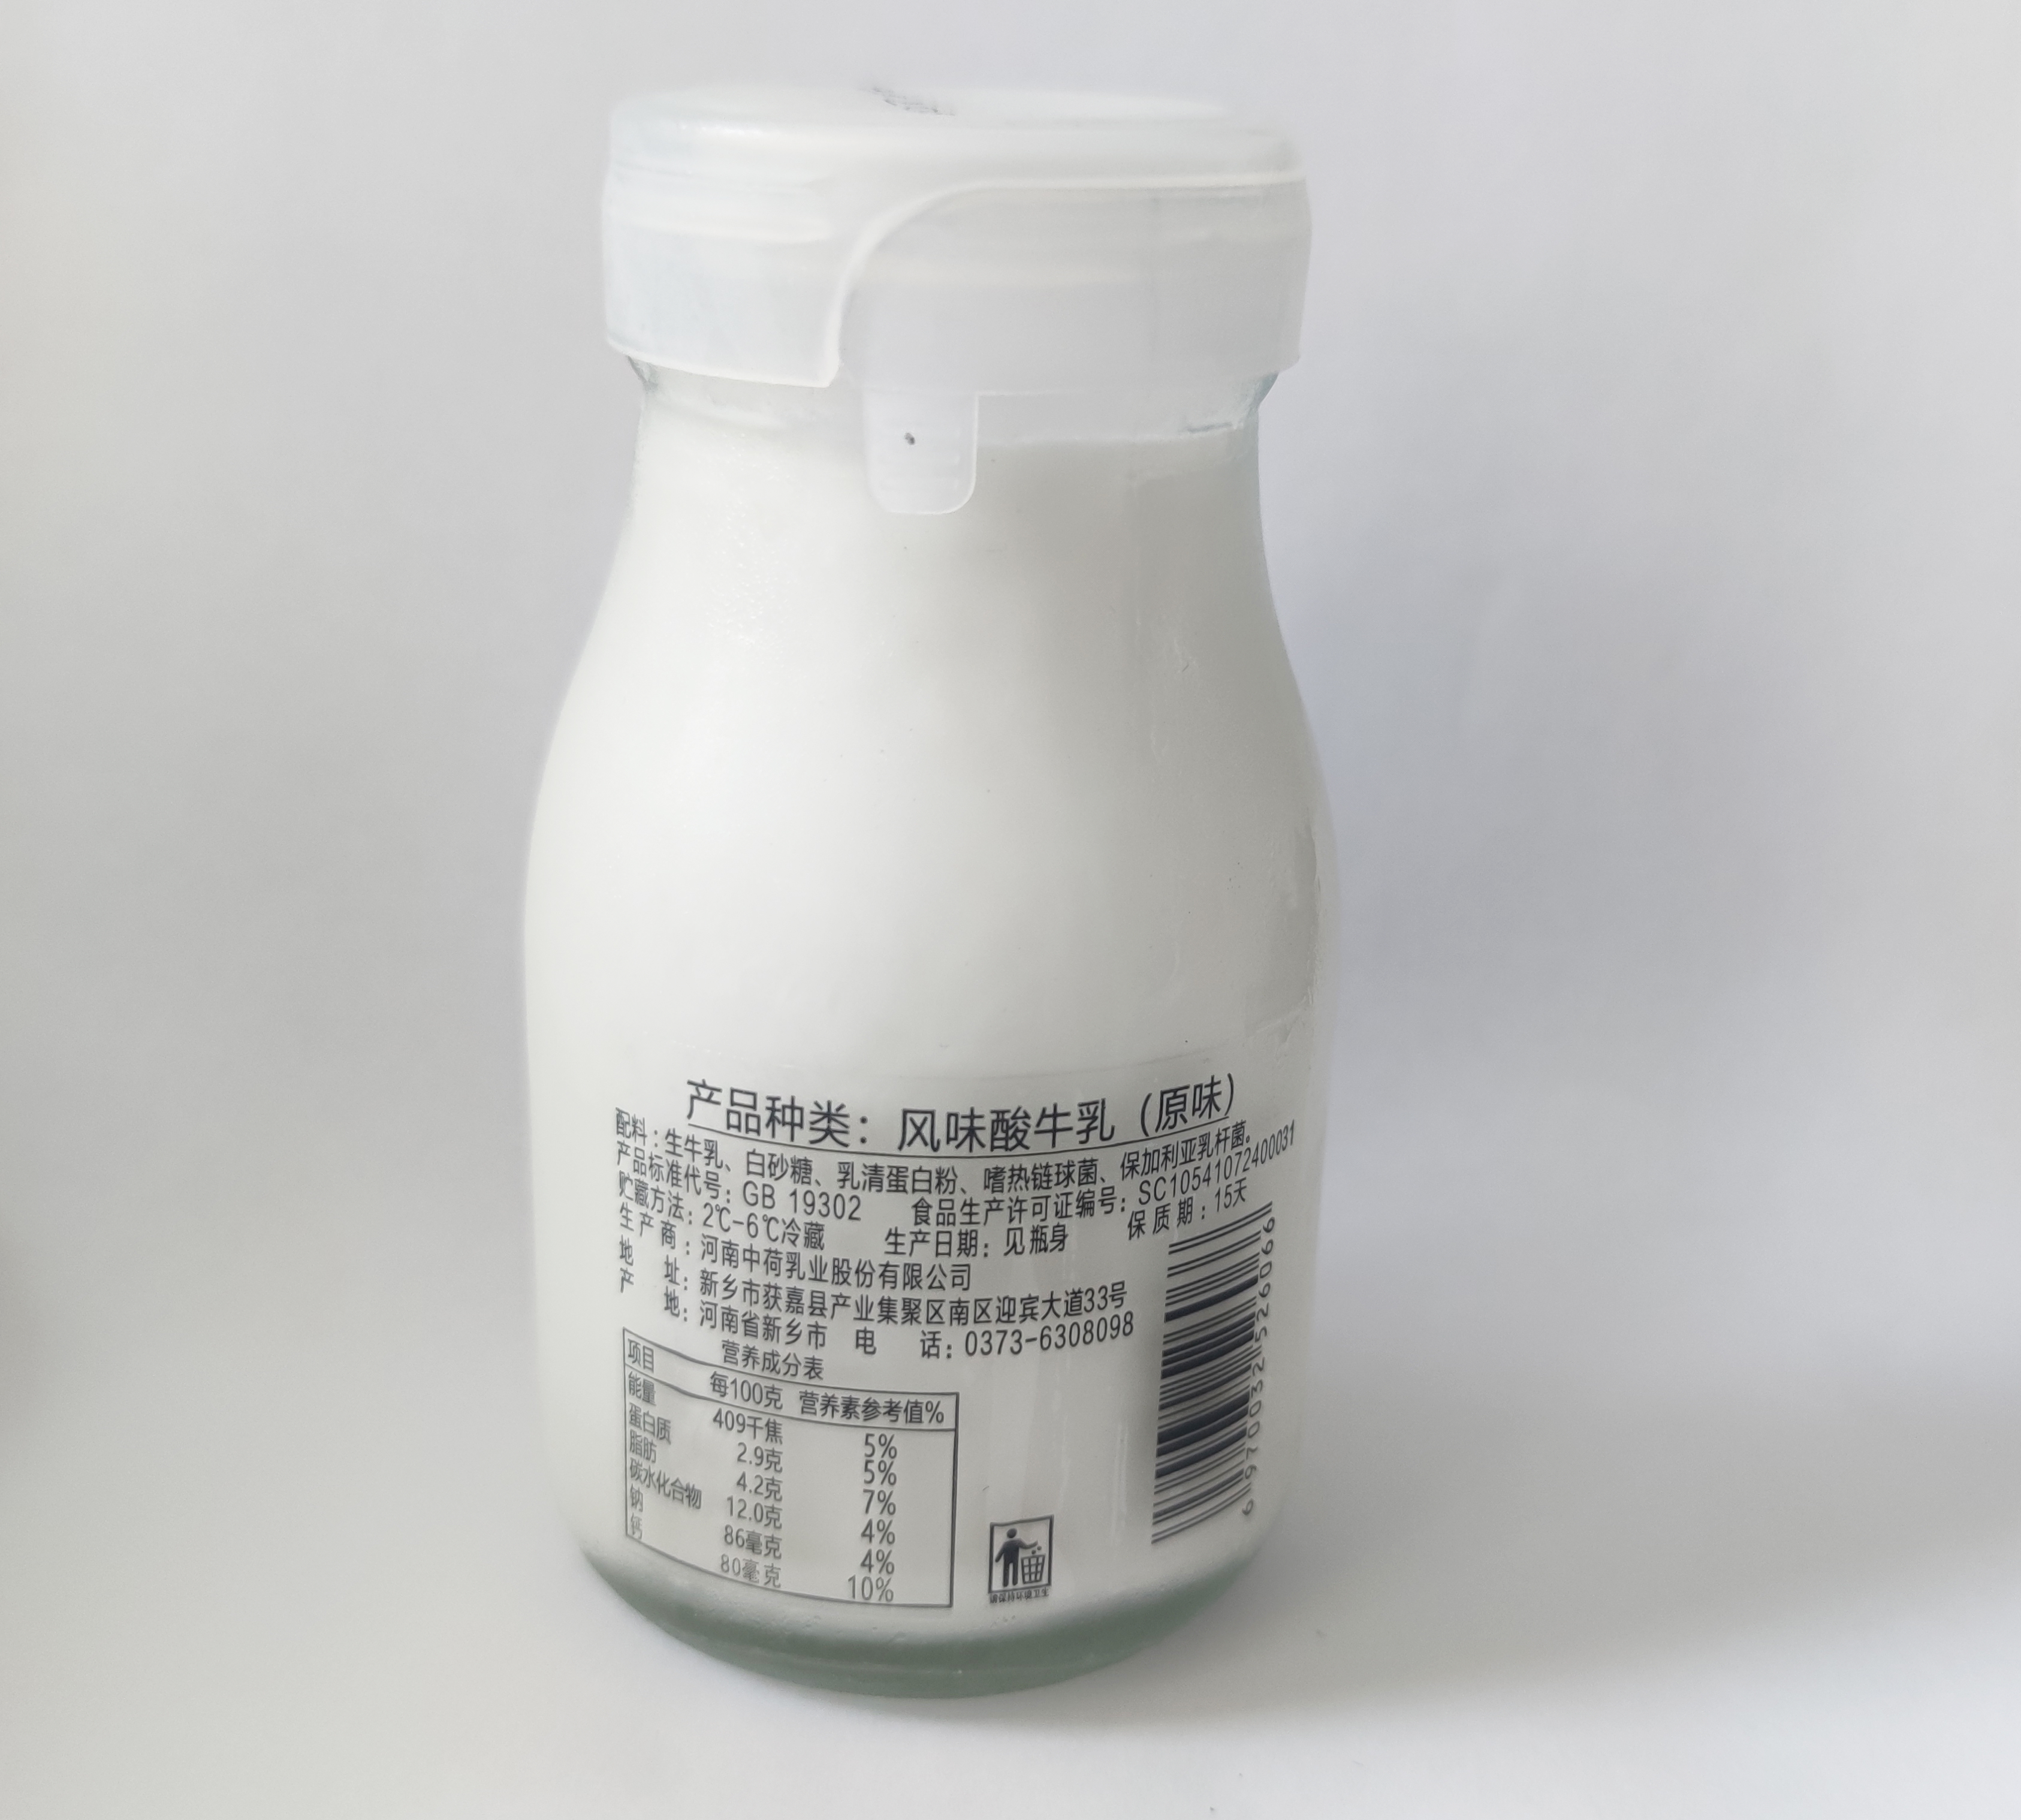 牛丰中荷乳业大河印象200g低温凝固酸奶玻璃瓶装12瓶发酵乳只限郑州市